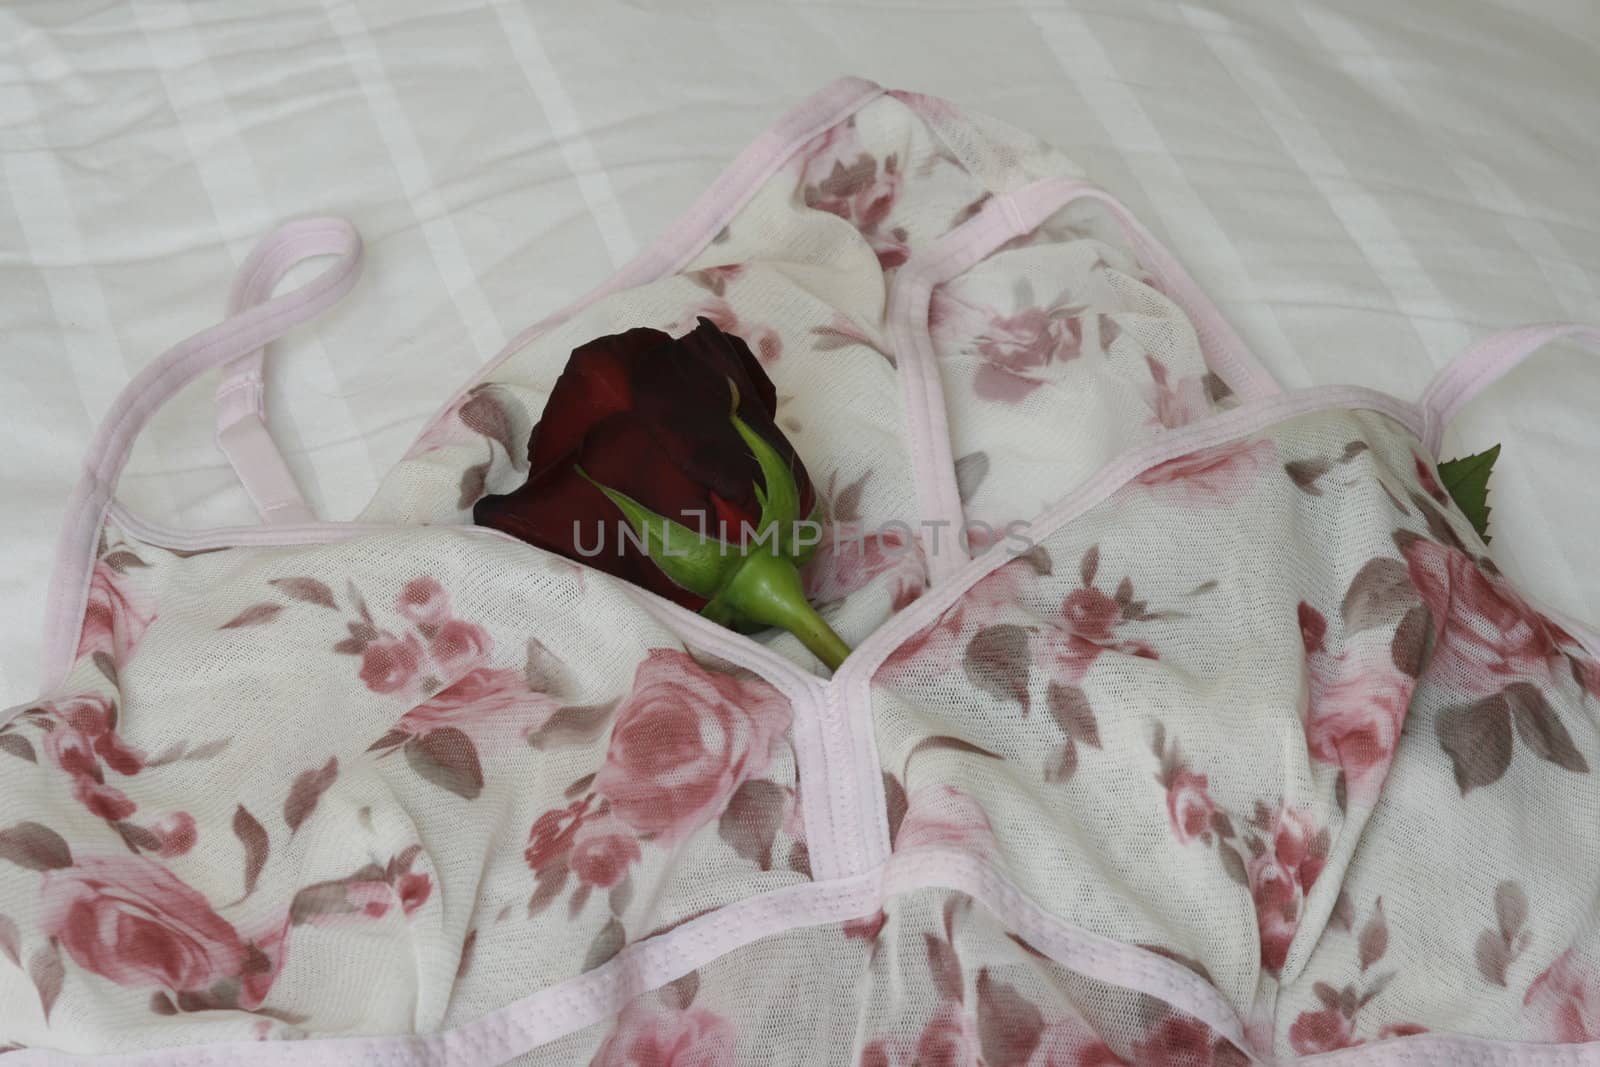 printed on ladies' underwear with rose